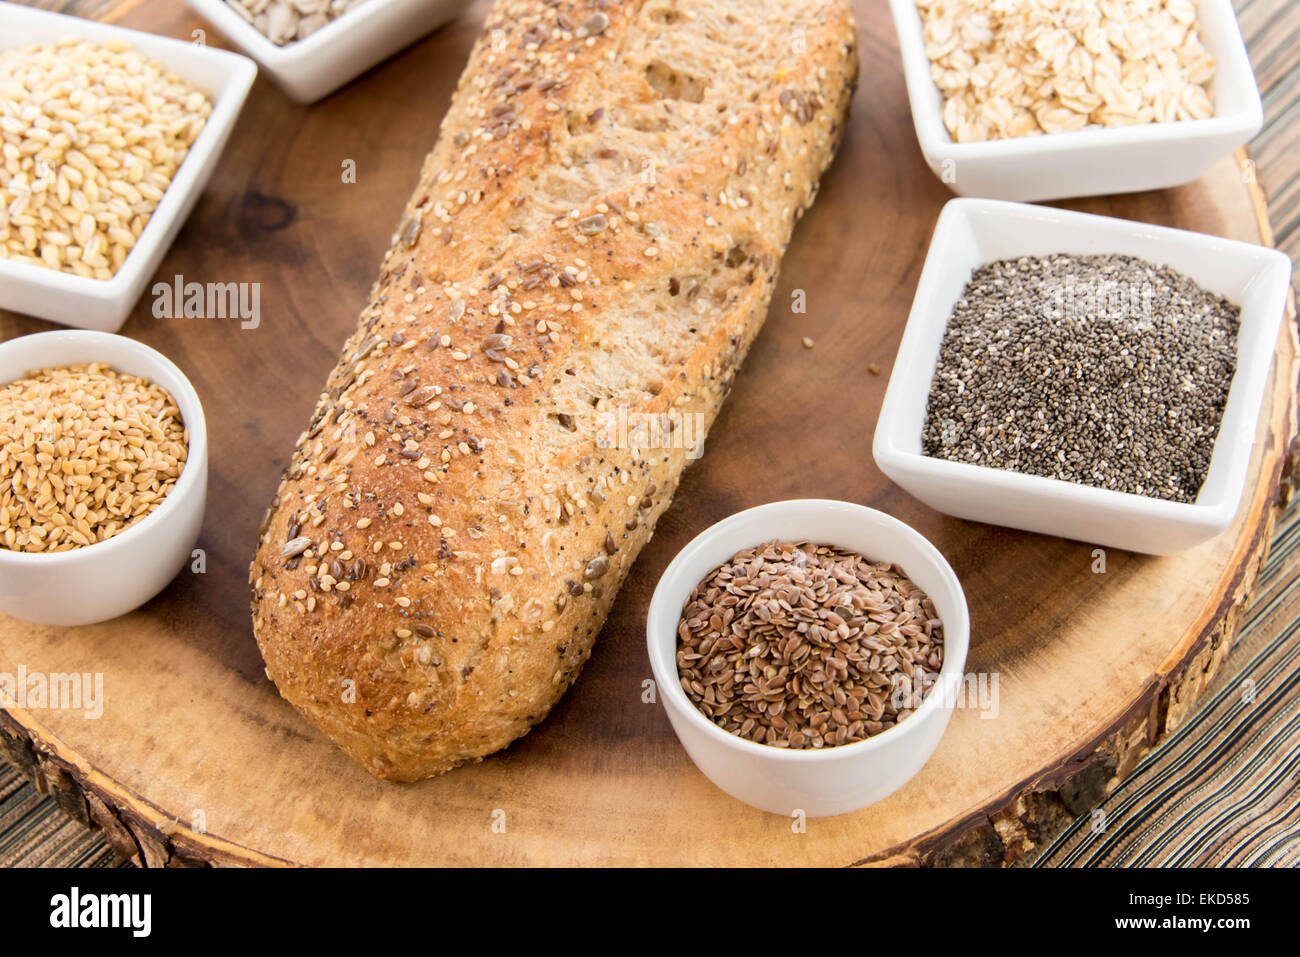 Un pain frais cuit avec du pain de grains entiers, de lin et de pavot Graines de tournesol Banque D'Images